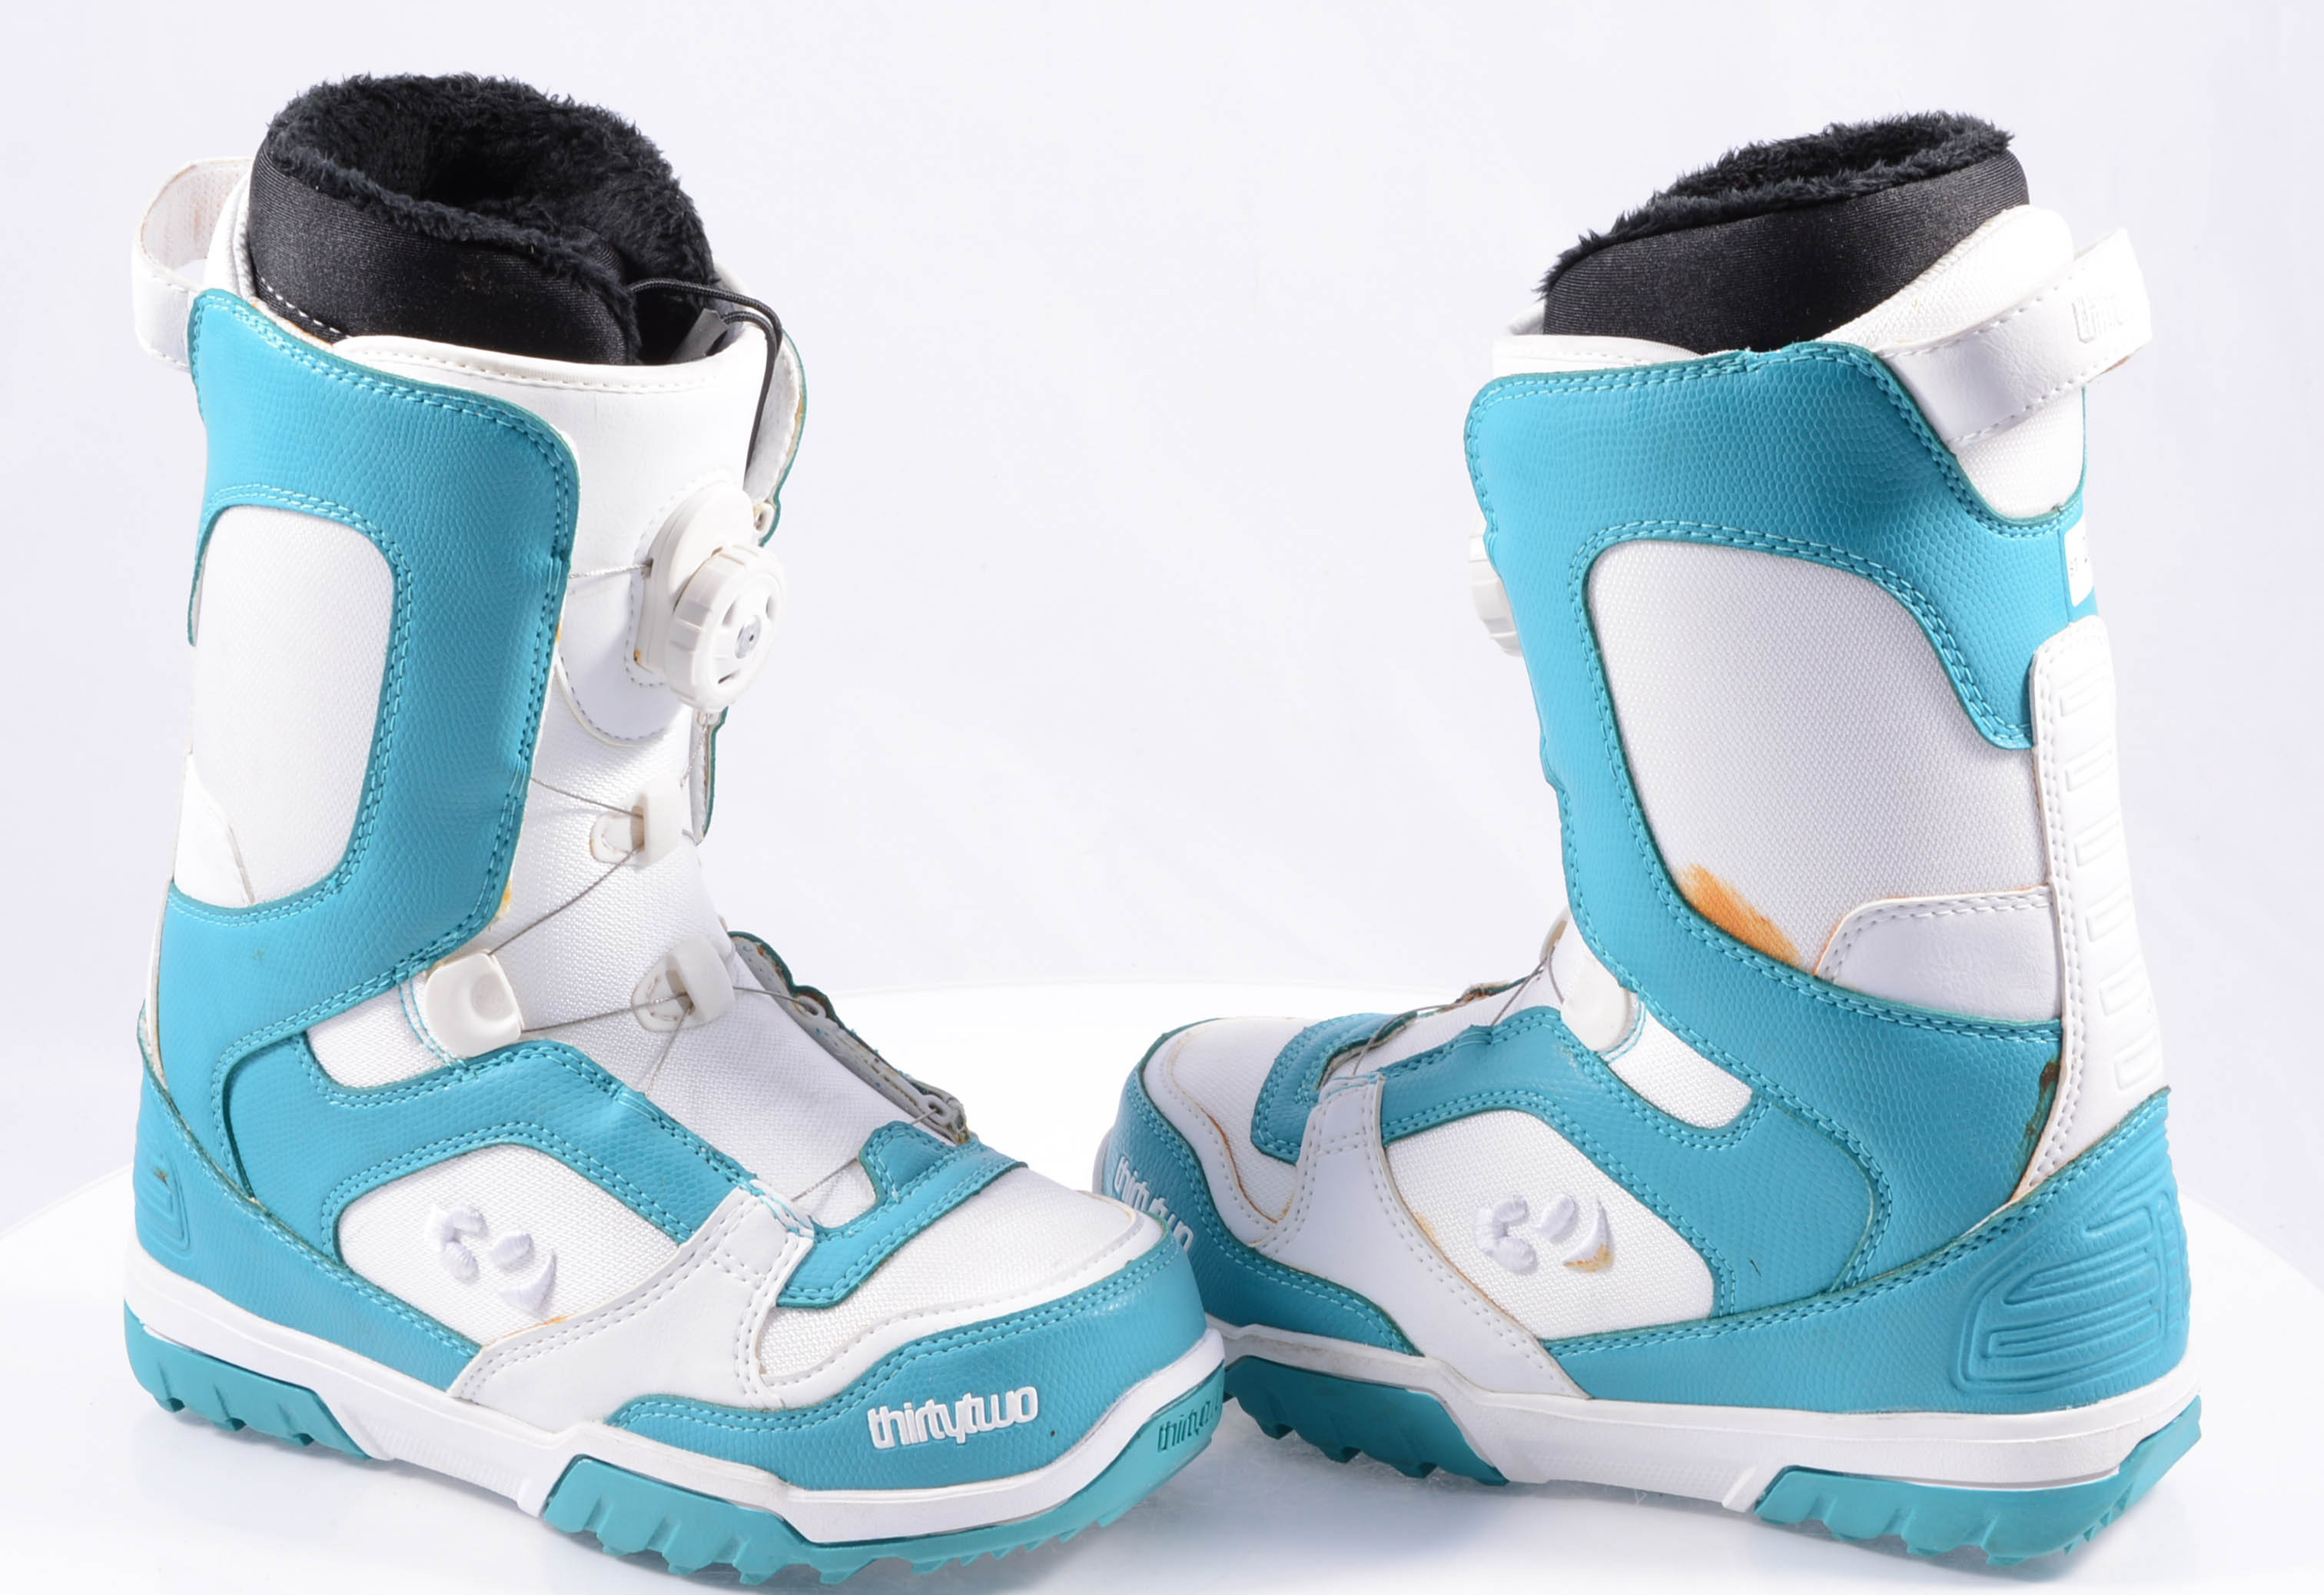 ondersteuning bloeden stoel nieuwe snowboard schoenen THIRTYTWO WOMEN'S STW BOA, white/blue ( NIEUWE )  - Mardosport.be